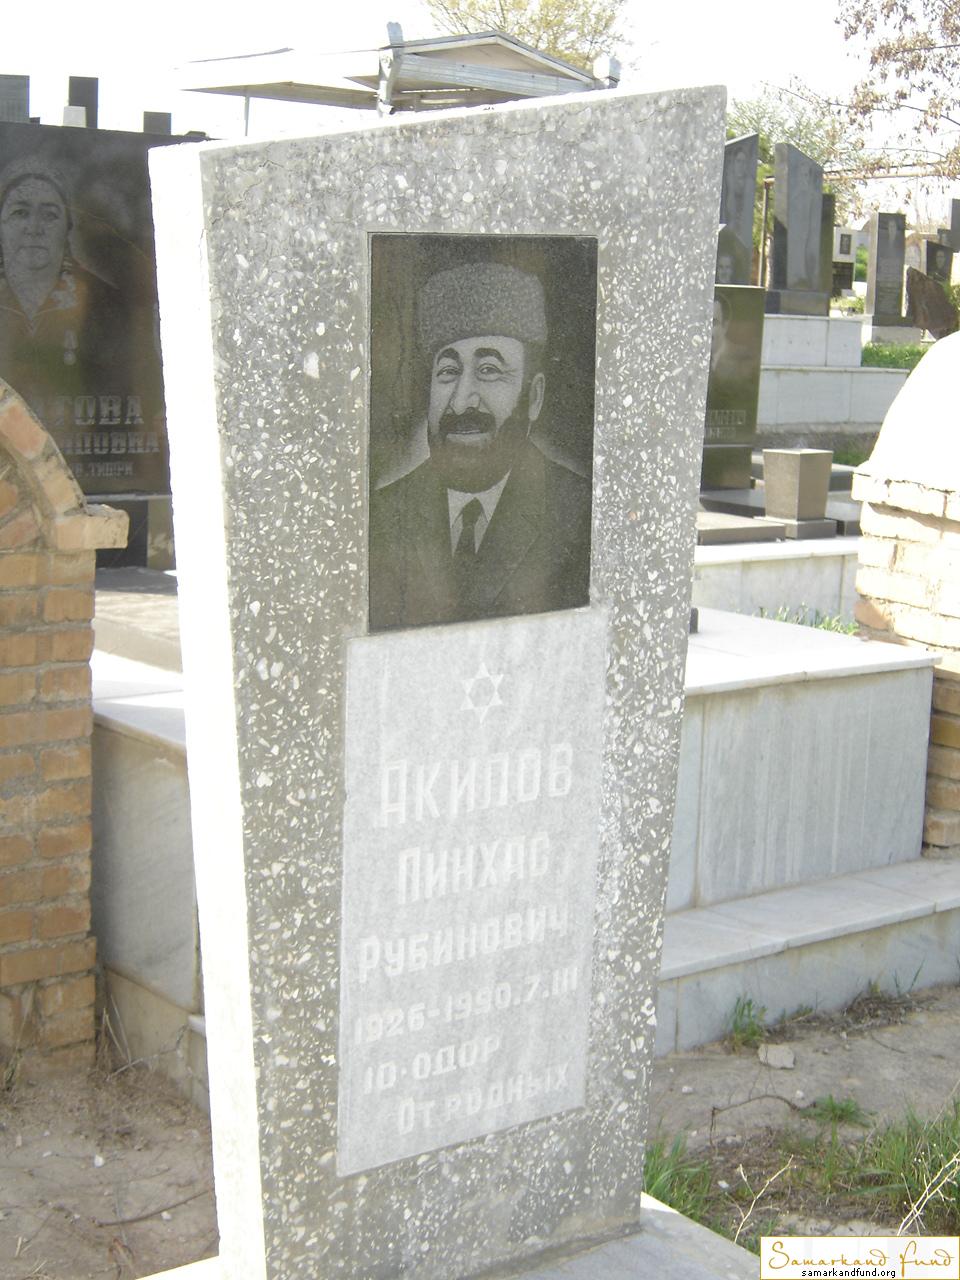 Акилов Пинхас Рубинович 1926 - 07.03.1920 зах.106.269  № 9.JPG